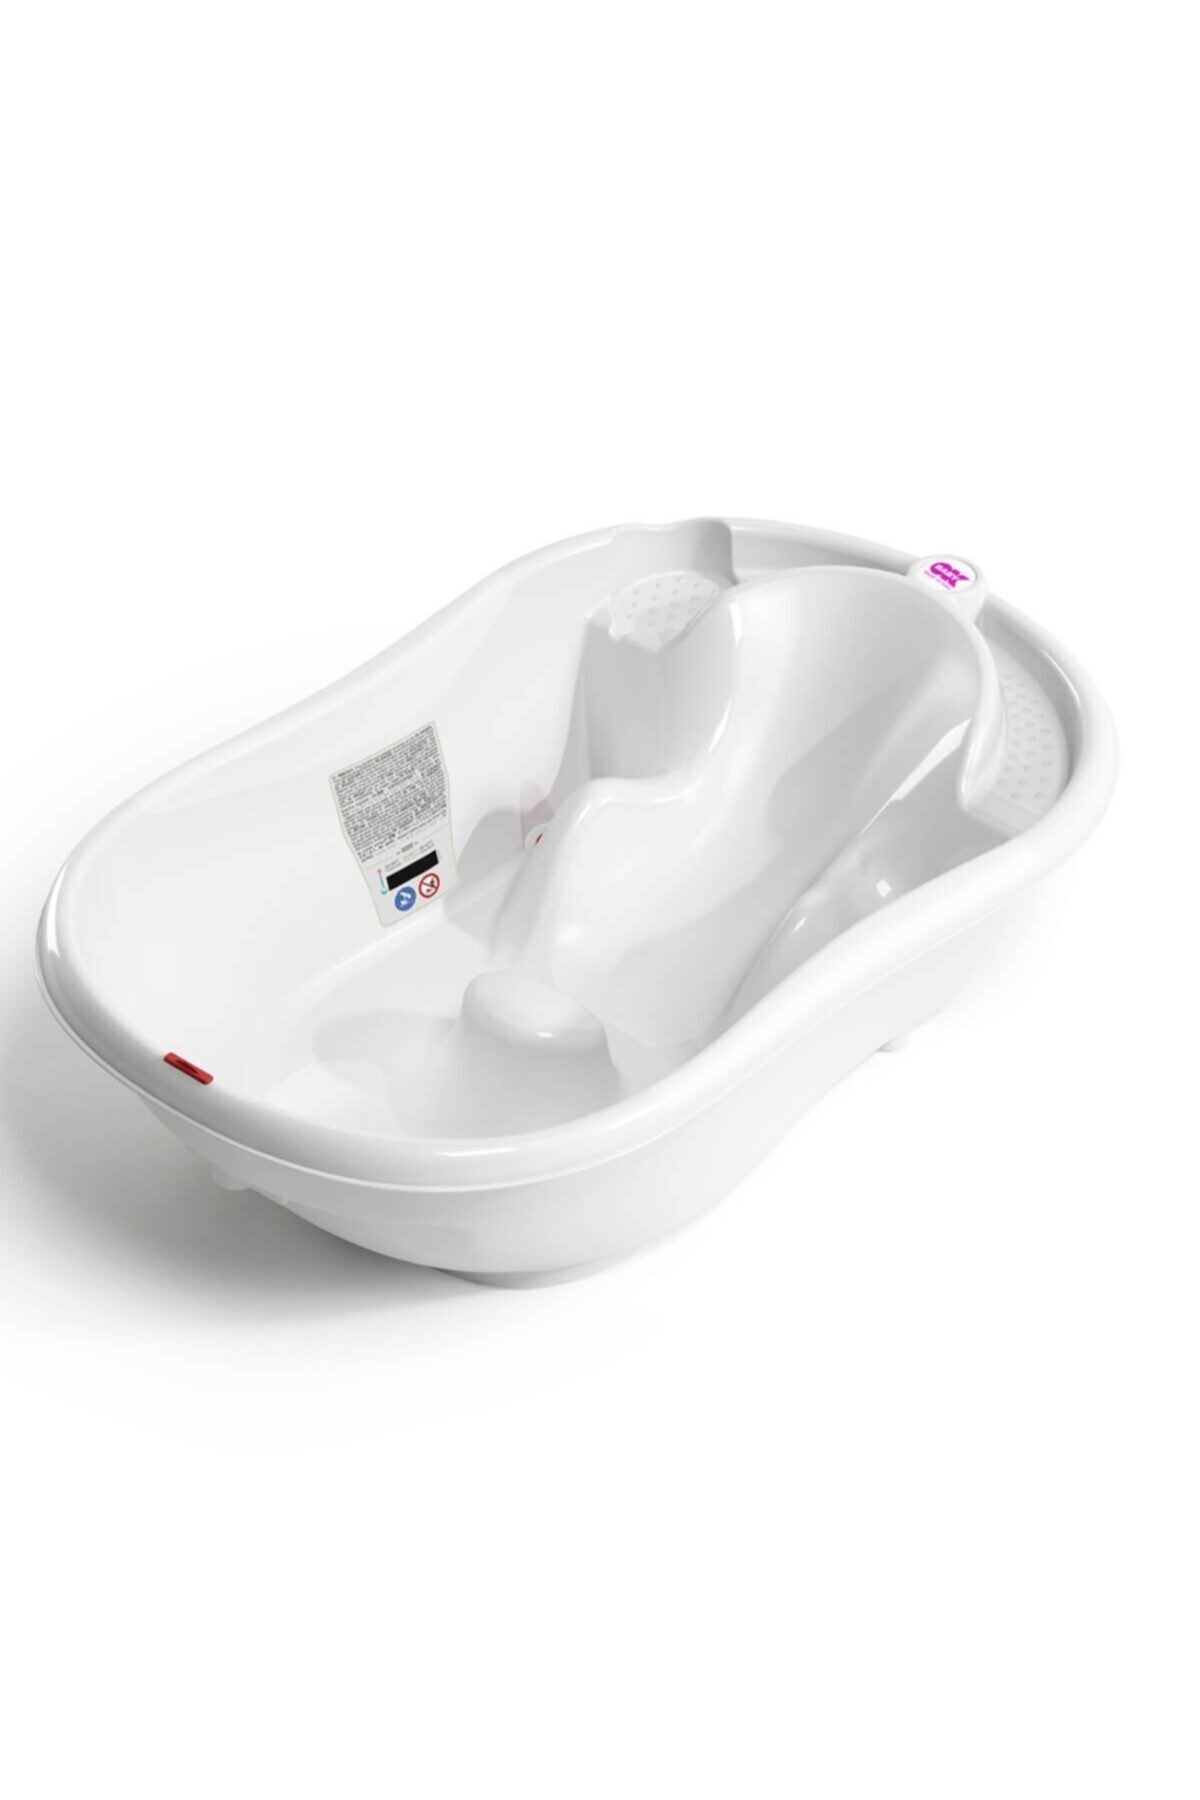 Okbaby Onda Banyo Küveti Küvet Taşıyıcı Beyaz Banyo Güvenlik Seti